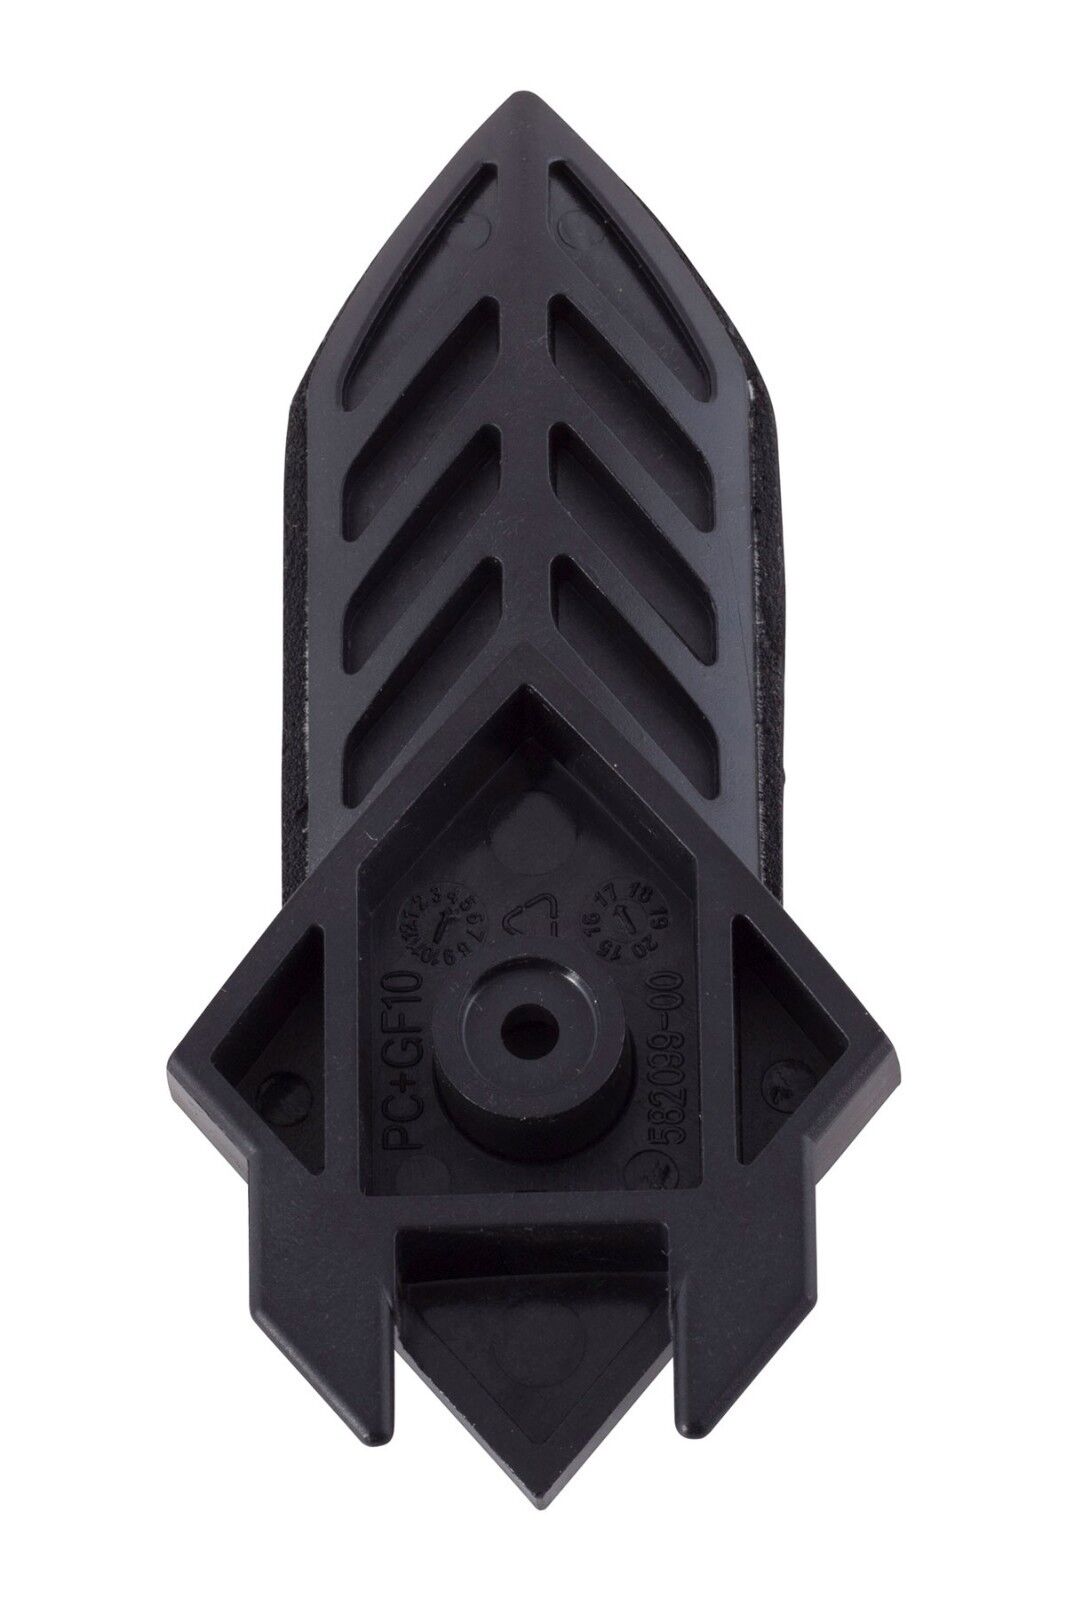 Black & Decker punta nottolino dettagli 582099-00 mouse KA160 KA161 KA165